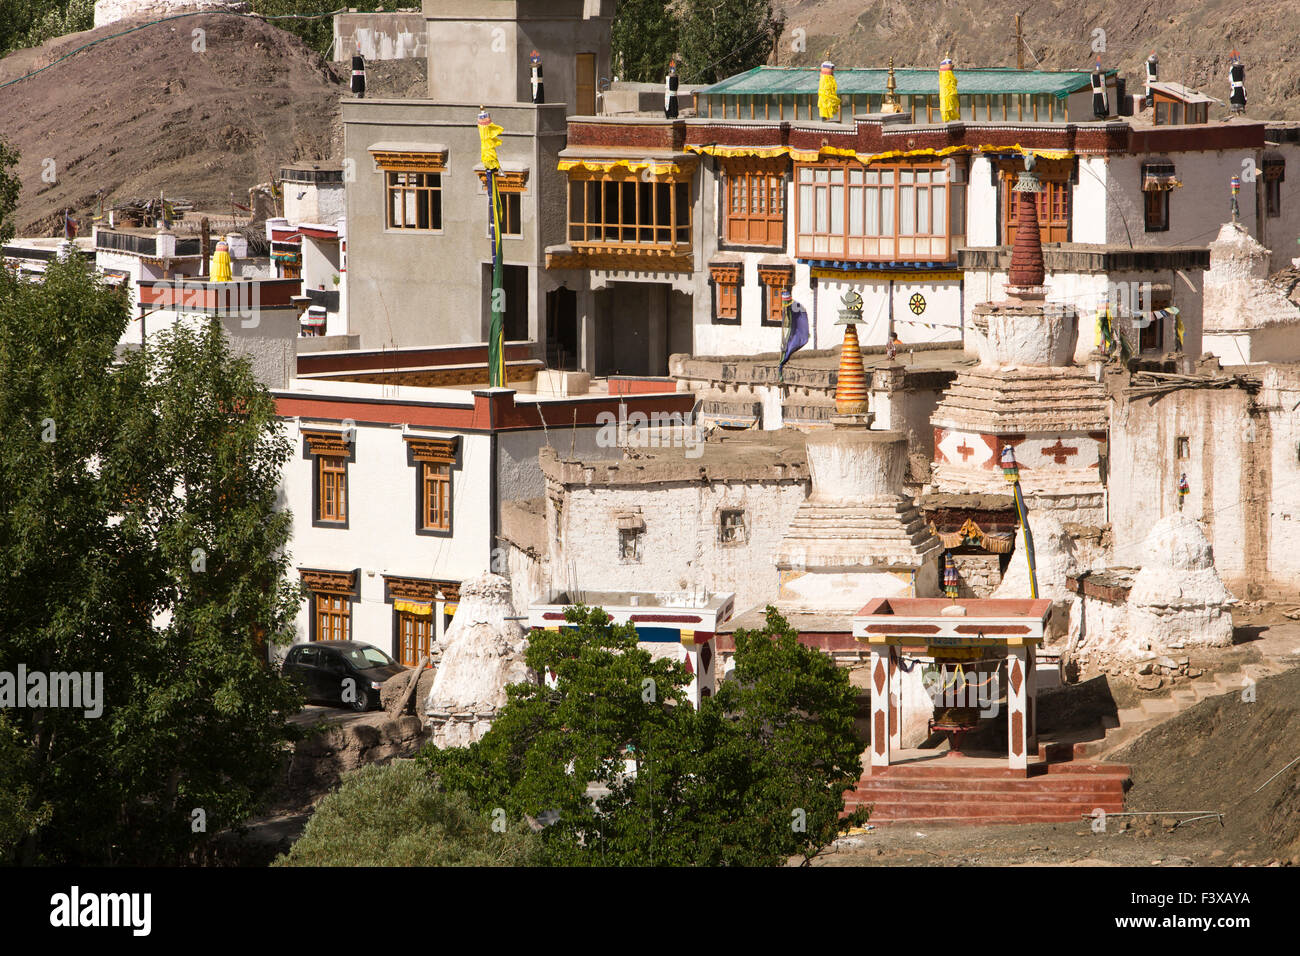 L'Inde, le Jammu-et-Cachemire, Ladakh, Stok gompa, monastère bouddhiste Banque D'Images